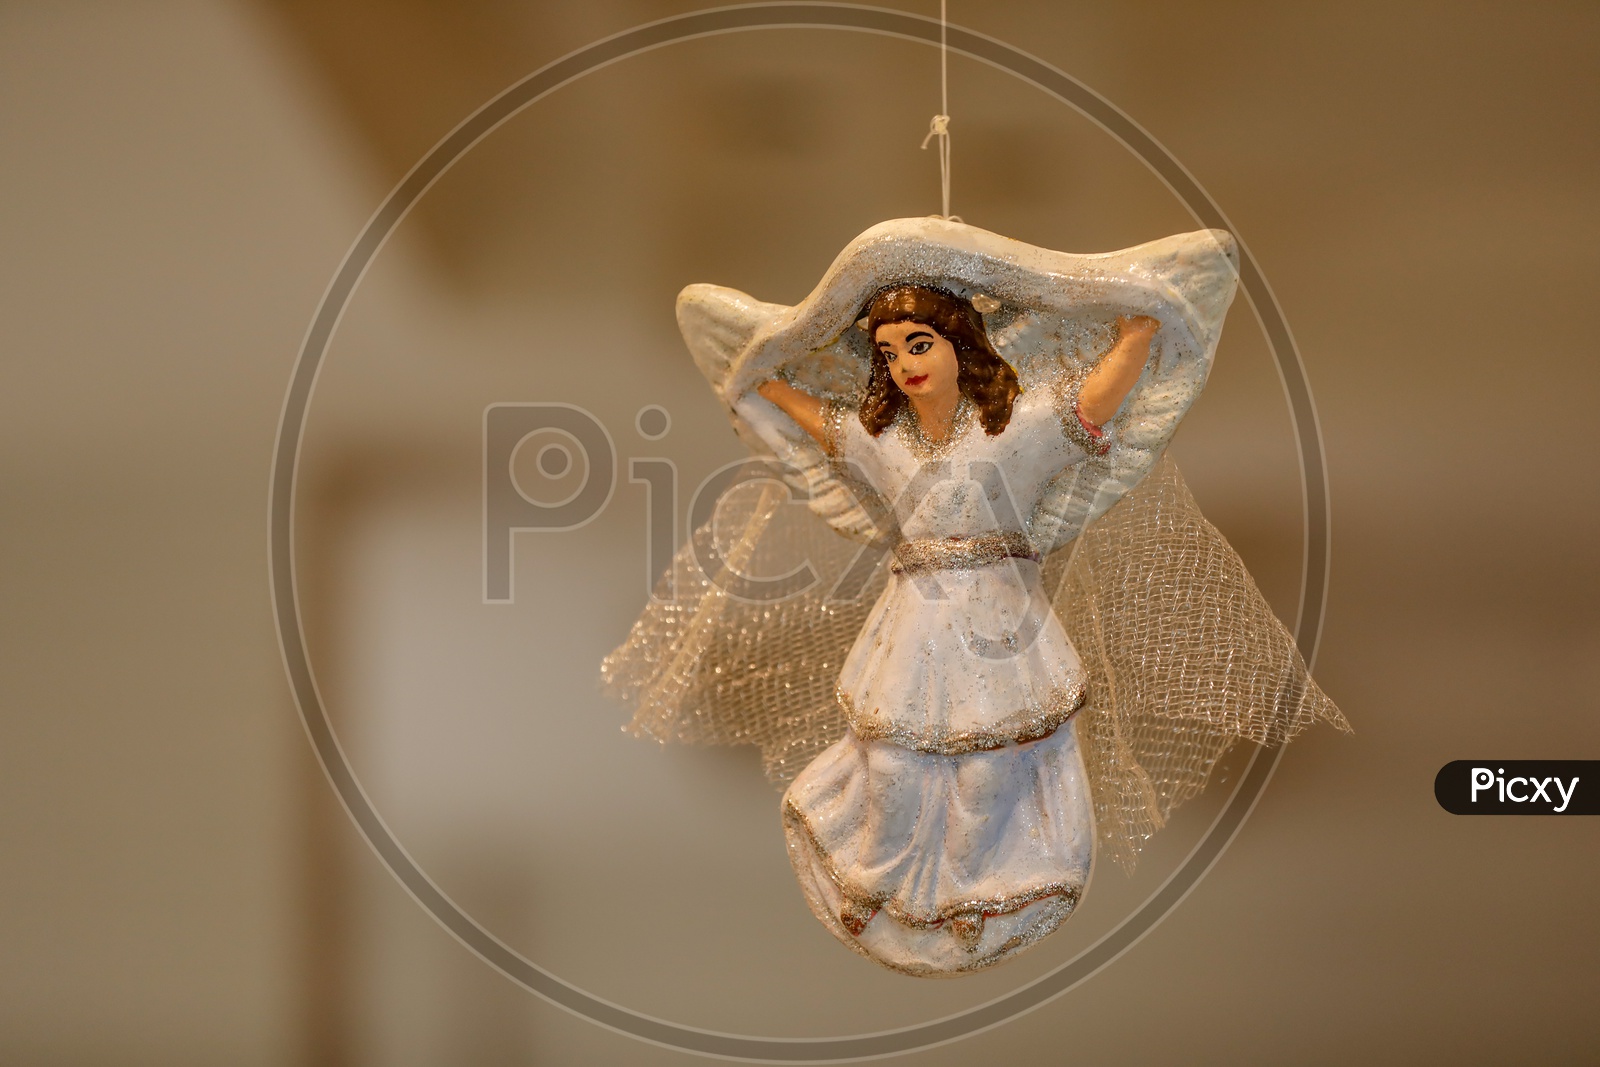 An Angel Doll Closeup Shot